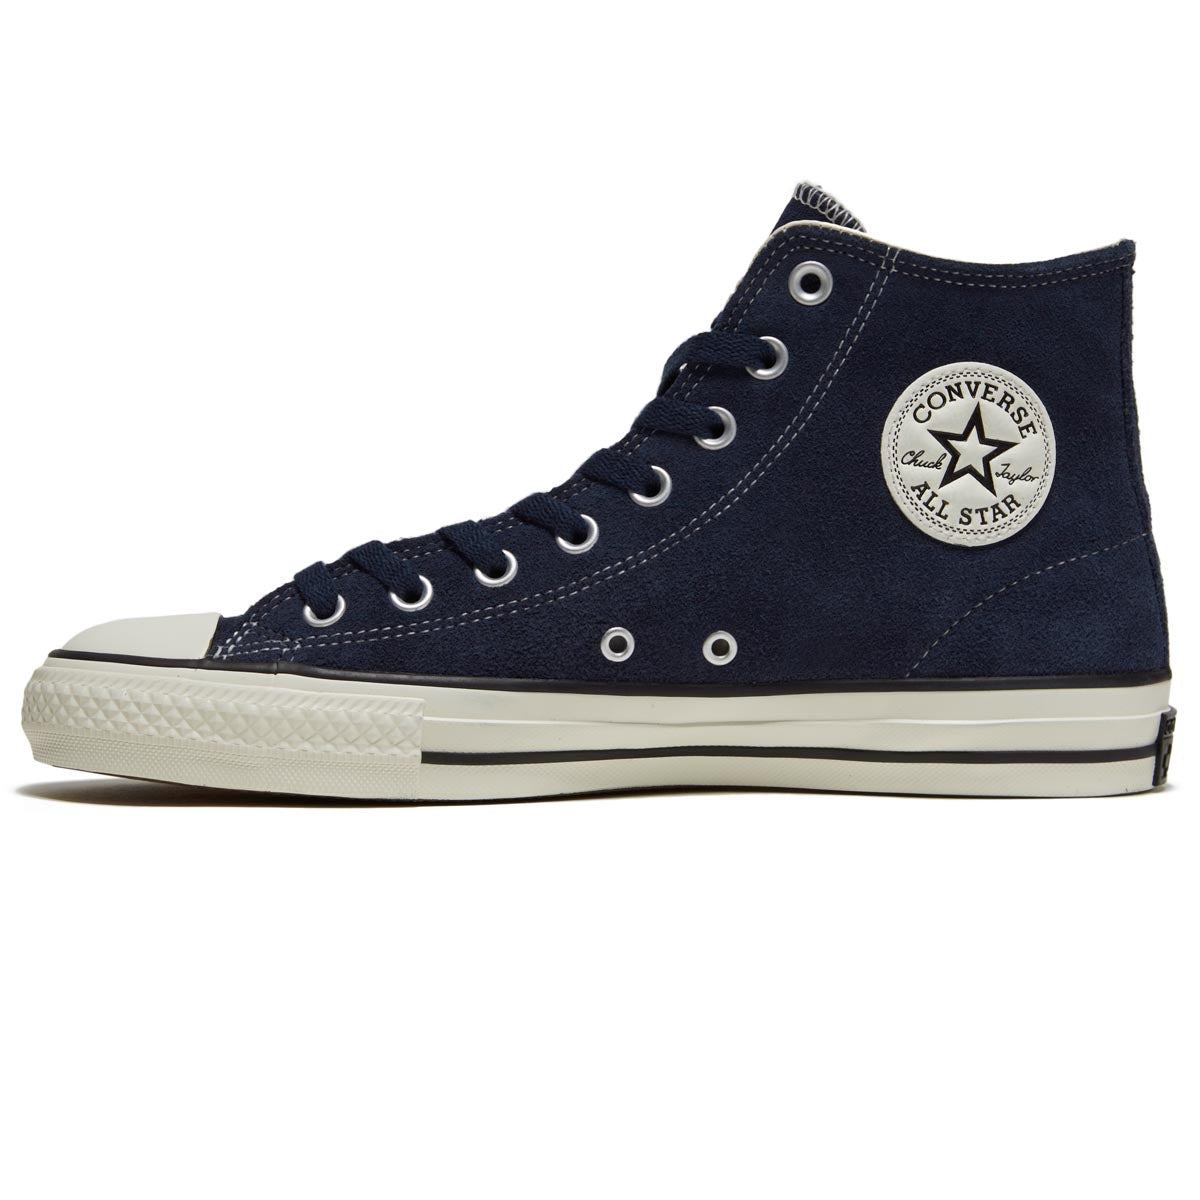 Converse Chuck Taylor All Star Pro Suede Hi Shoes - Navy/Egret/Black – CCS